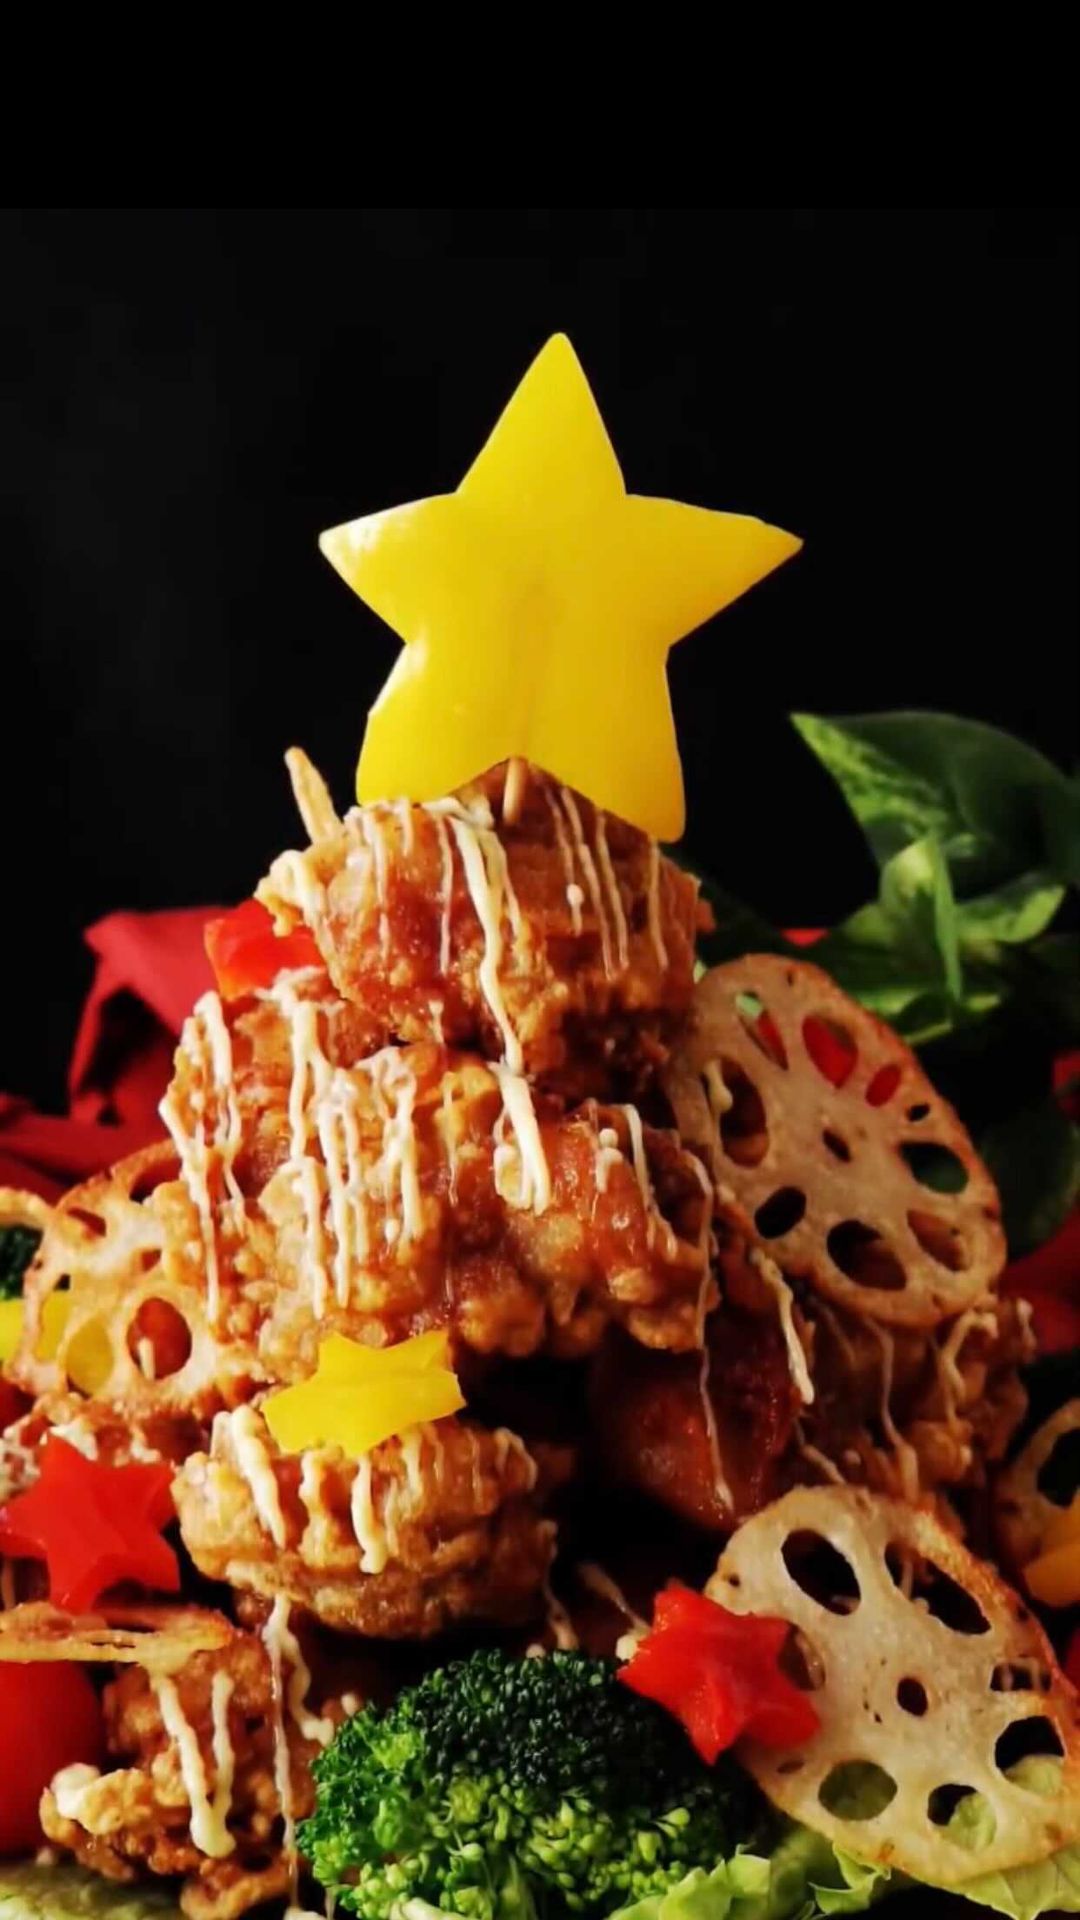 Tastemadejapan 子供の夢がつまってる クリスマス からあげタワー 唐揚げを積み上げて野菜で飾り付けたら パーティーにピッタリな唐揚げタワーの完成です 今年のクリ Ciao Nihon